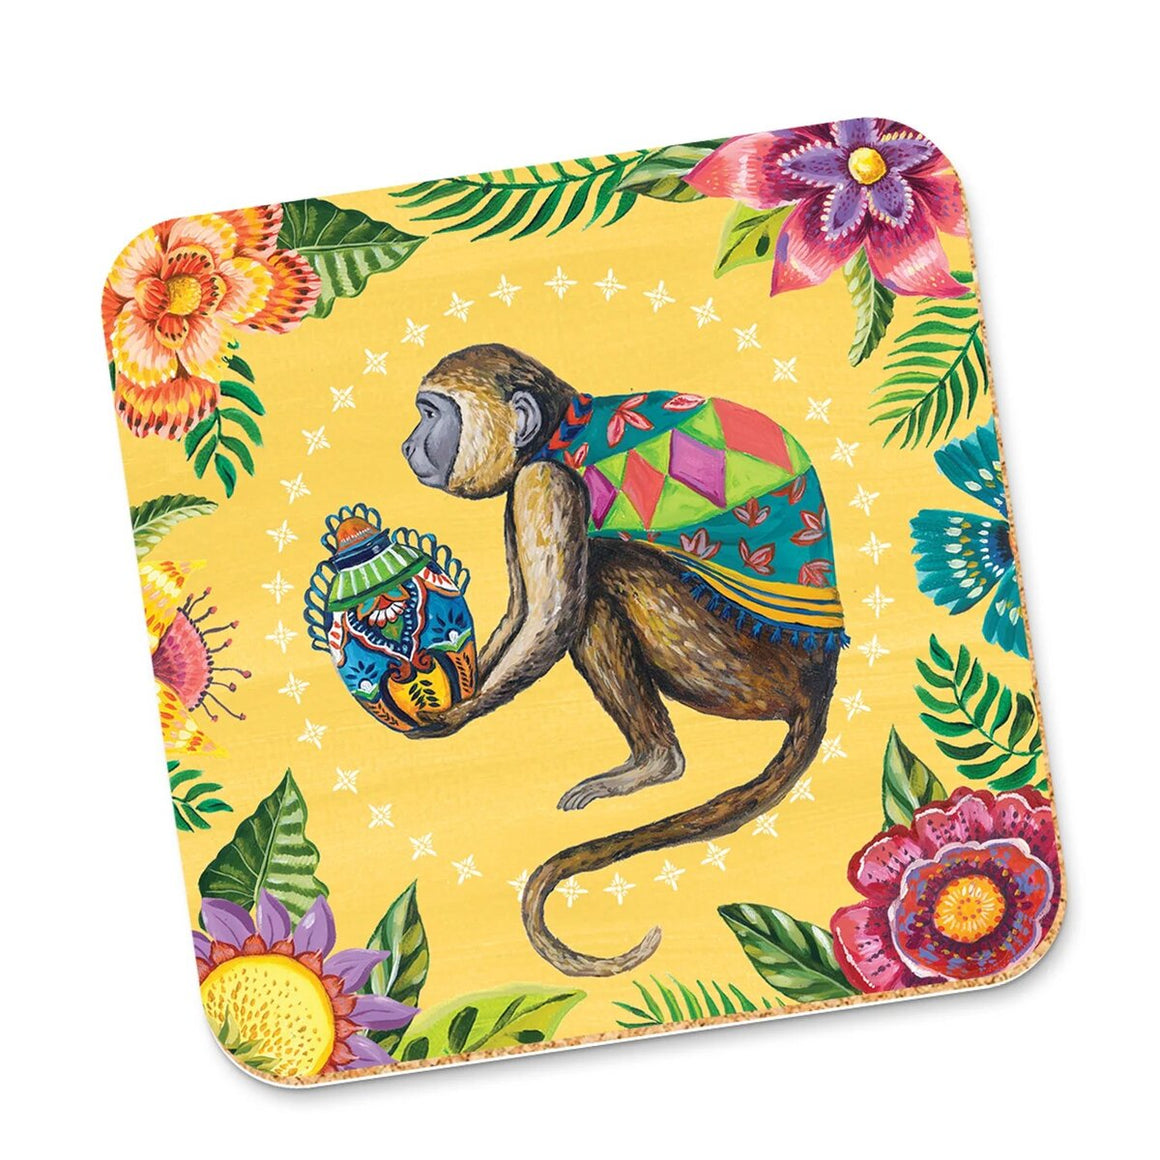 Coaster | Viva La Vida Monkey